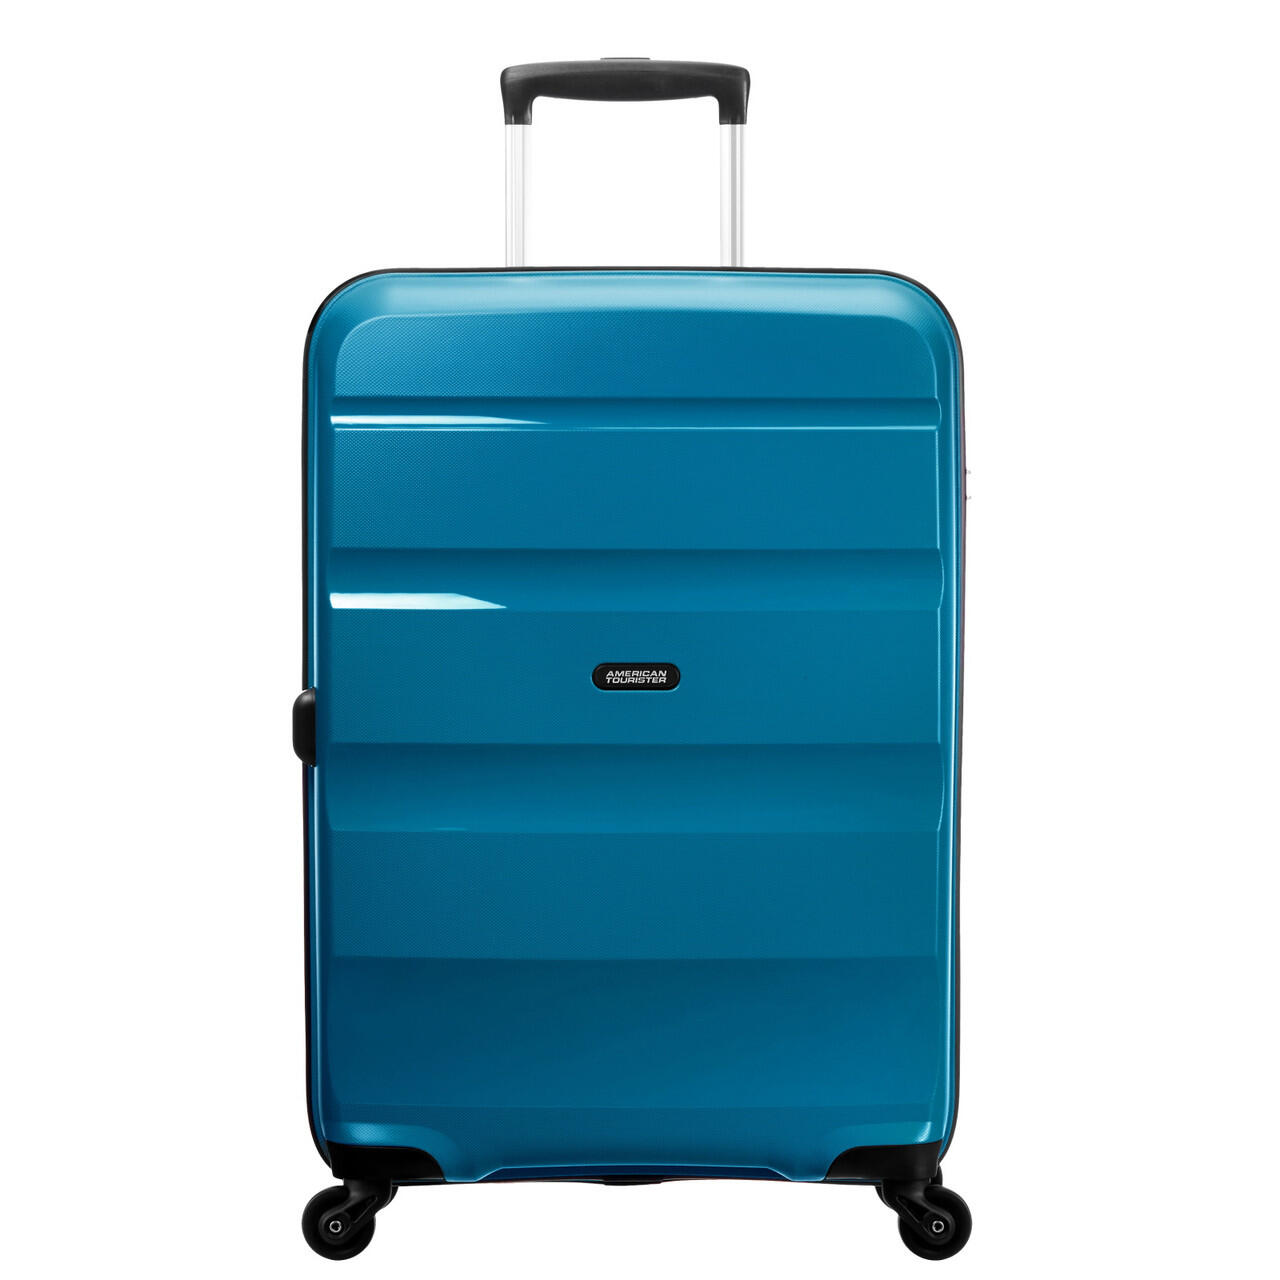 Bon Air 4 Wheel Large Suitcase - 75cm - Blue 1/7